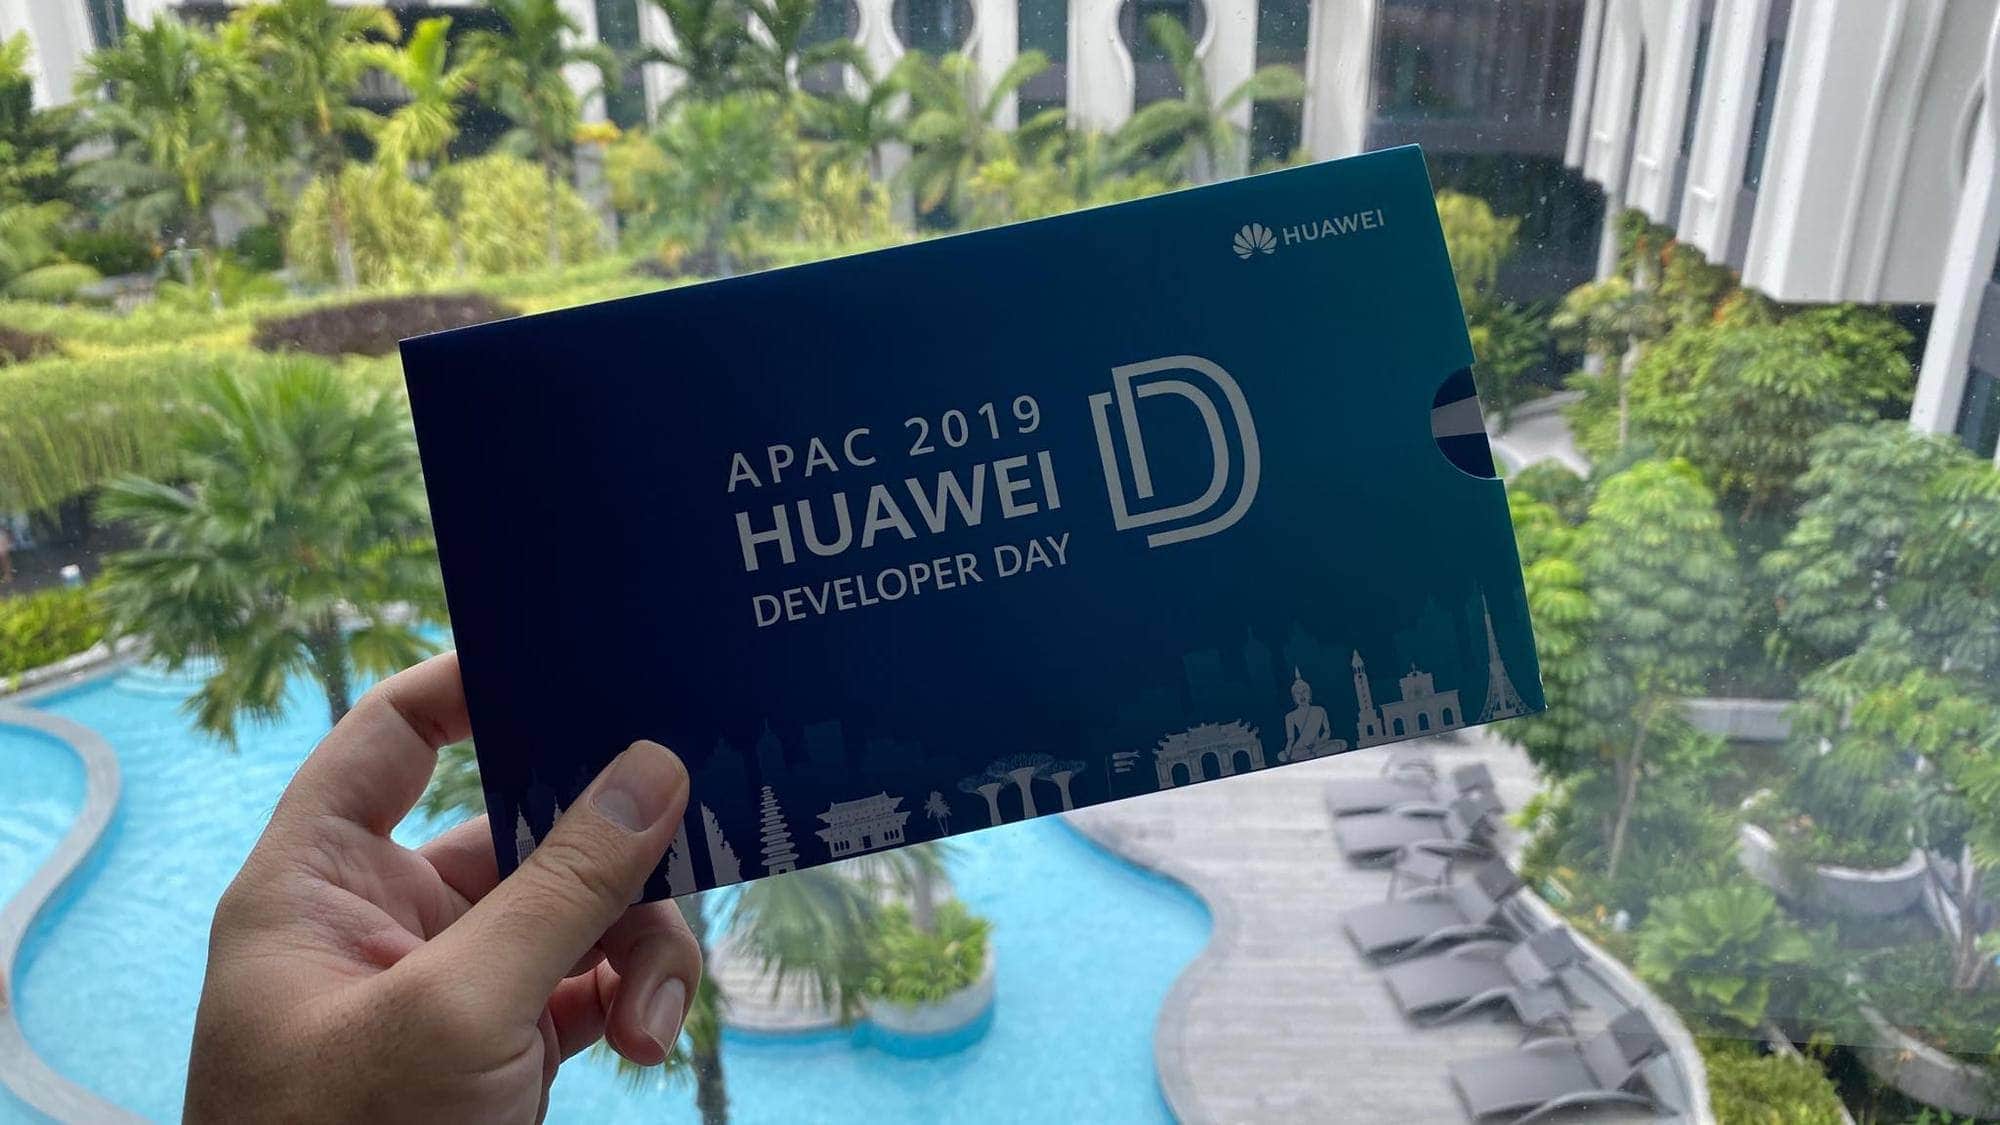 สรุปประเด็น HMS ที่น่าสนใจจากงาน HUAWEI Developer Day 2019 ระดับ Asia Pacific 1